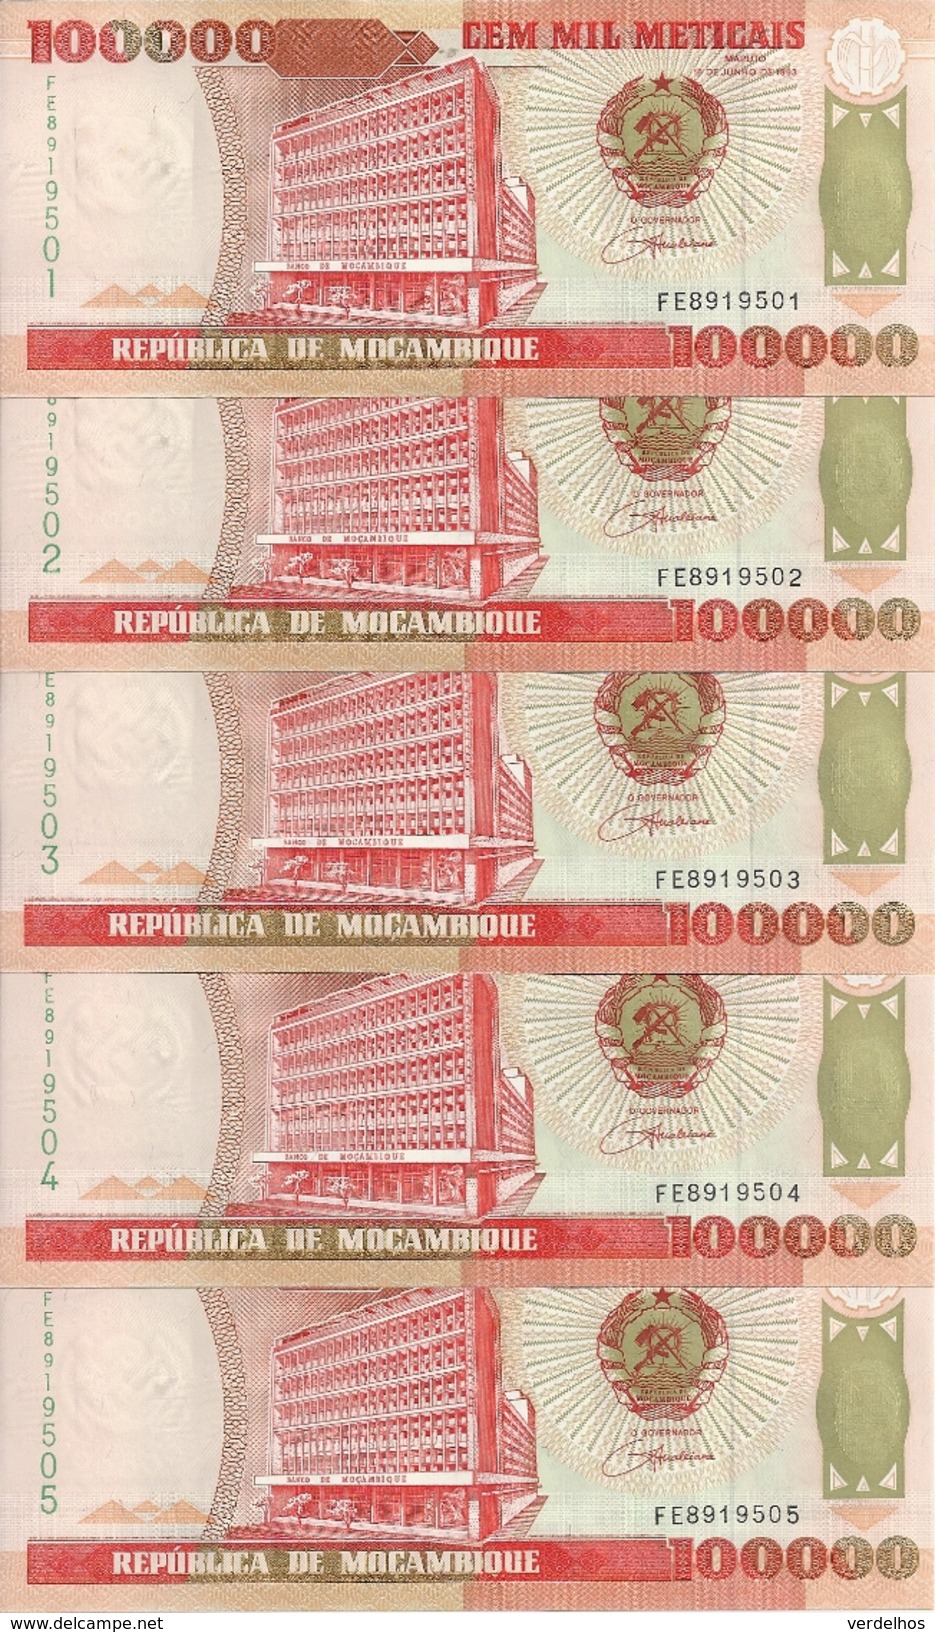 MOZAMBIQUE 100000 METICAIS 1993 UNC P 139 ( 5 Billets ) - Mozambique